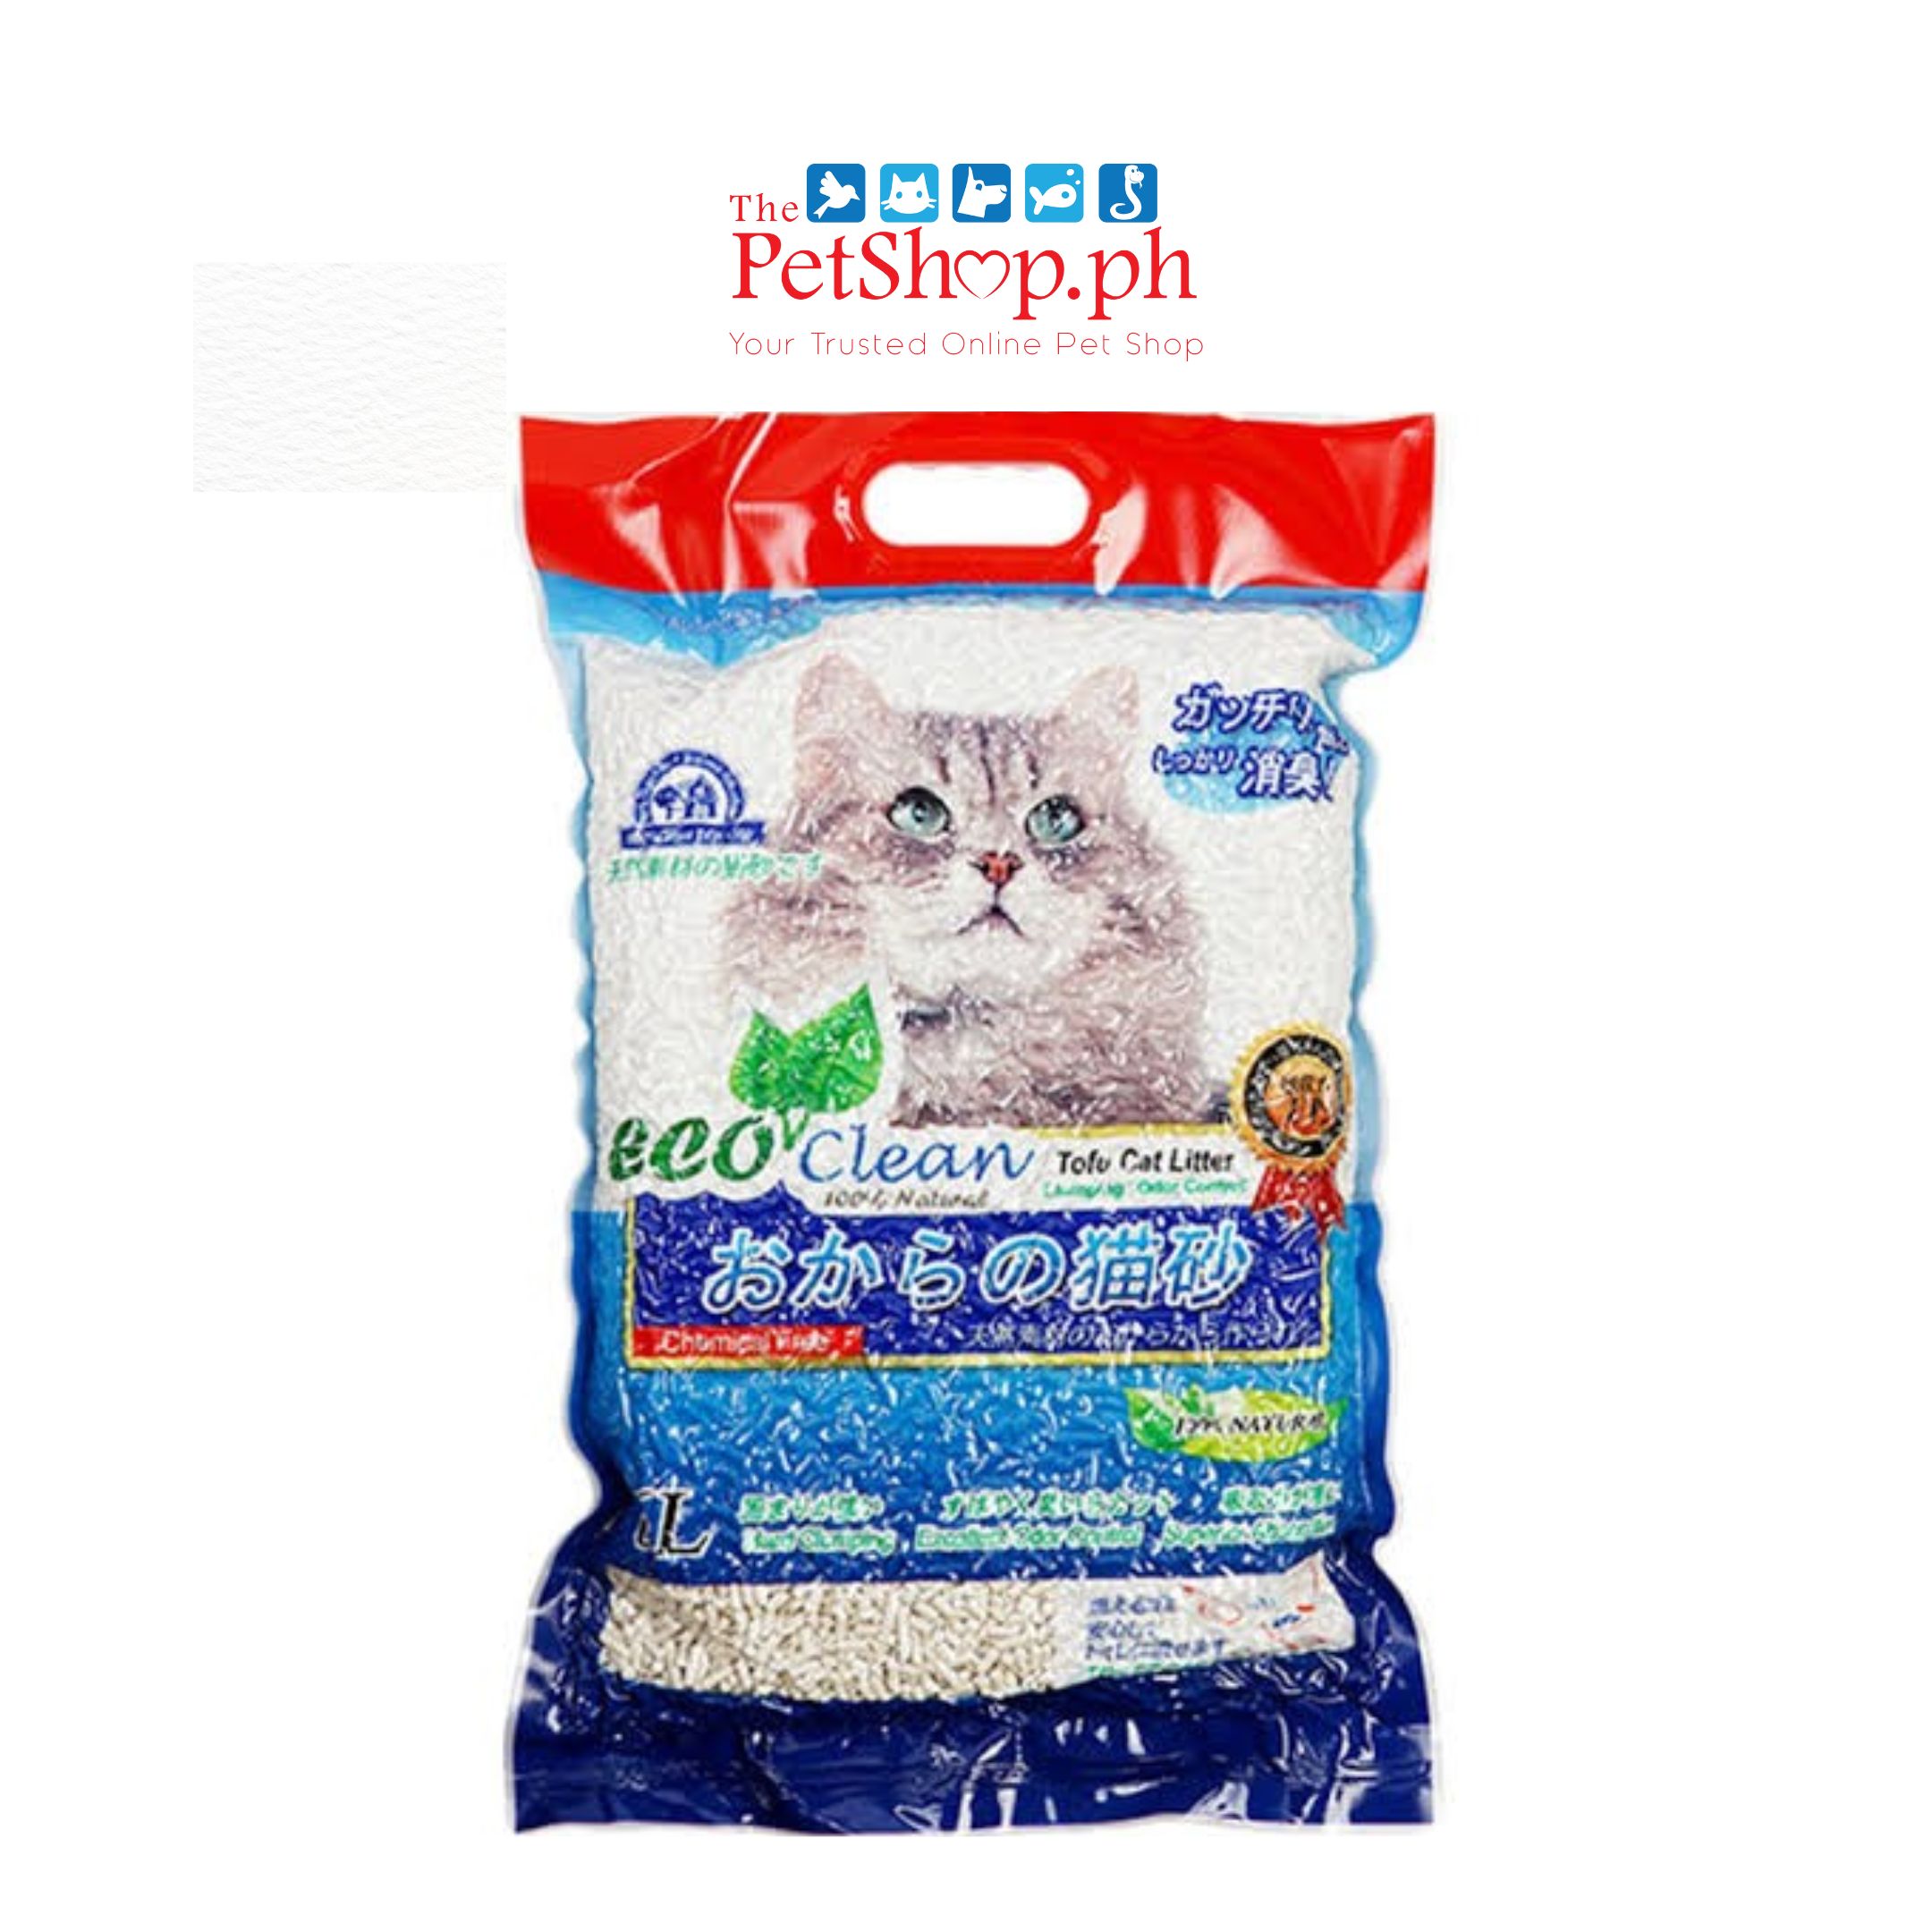 Eco Clean Tofu Set of 6 - Original Scent Cat Litter Clumping 7L